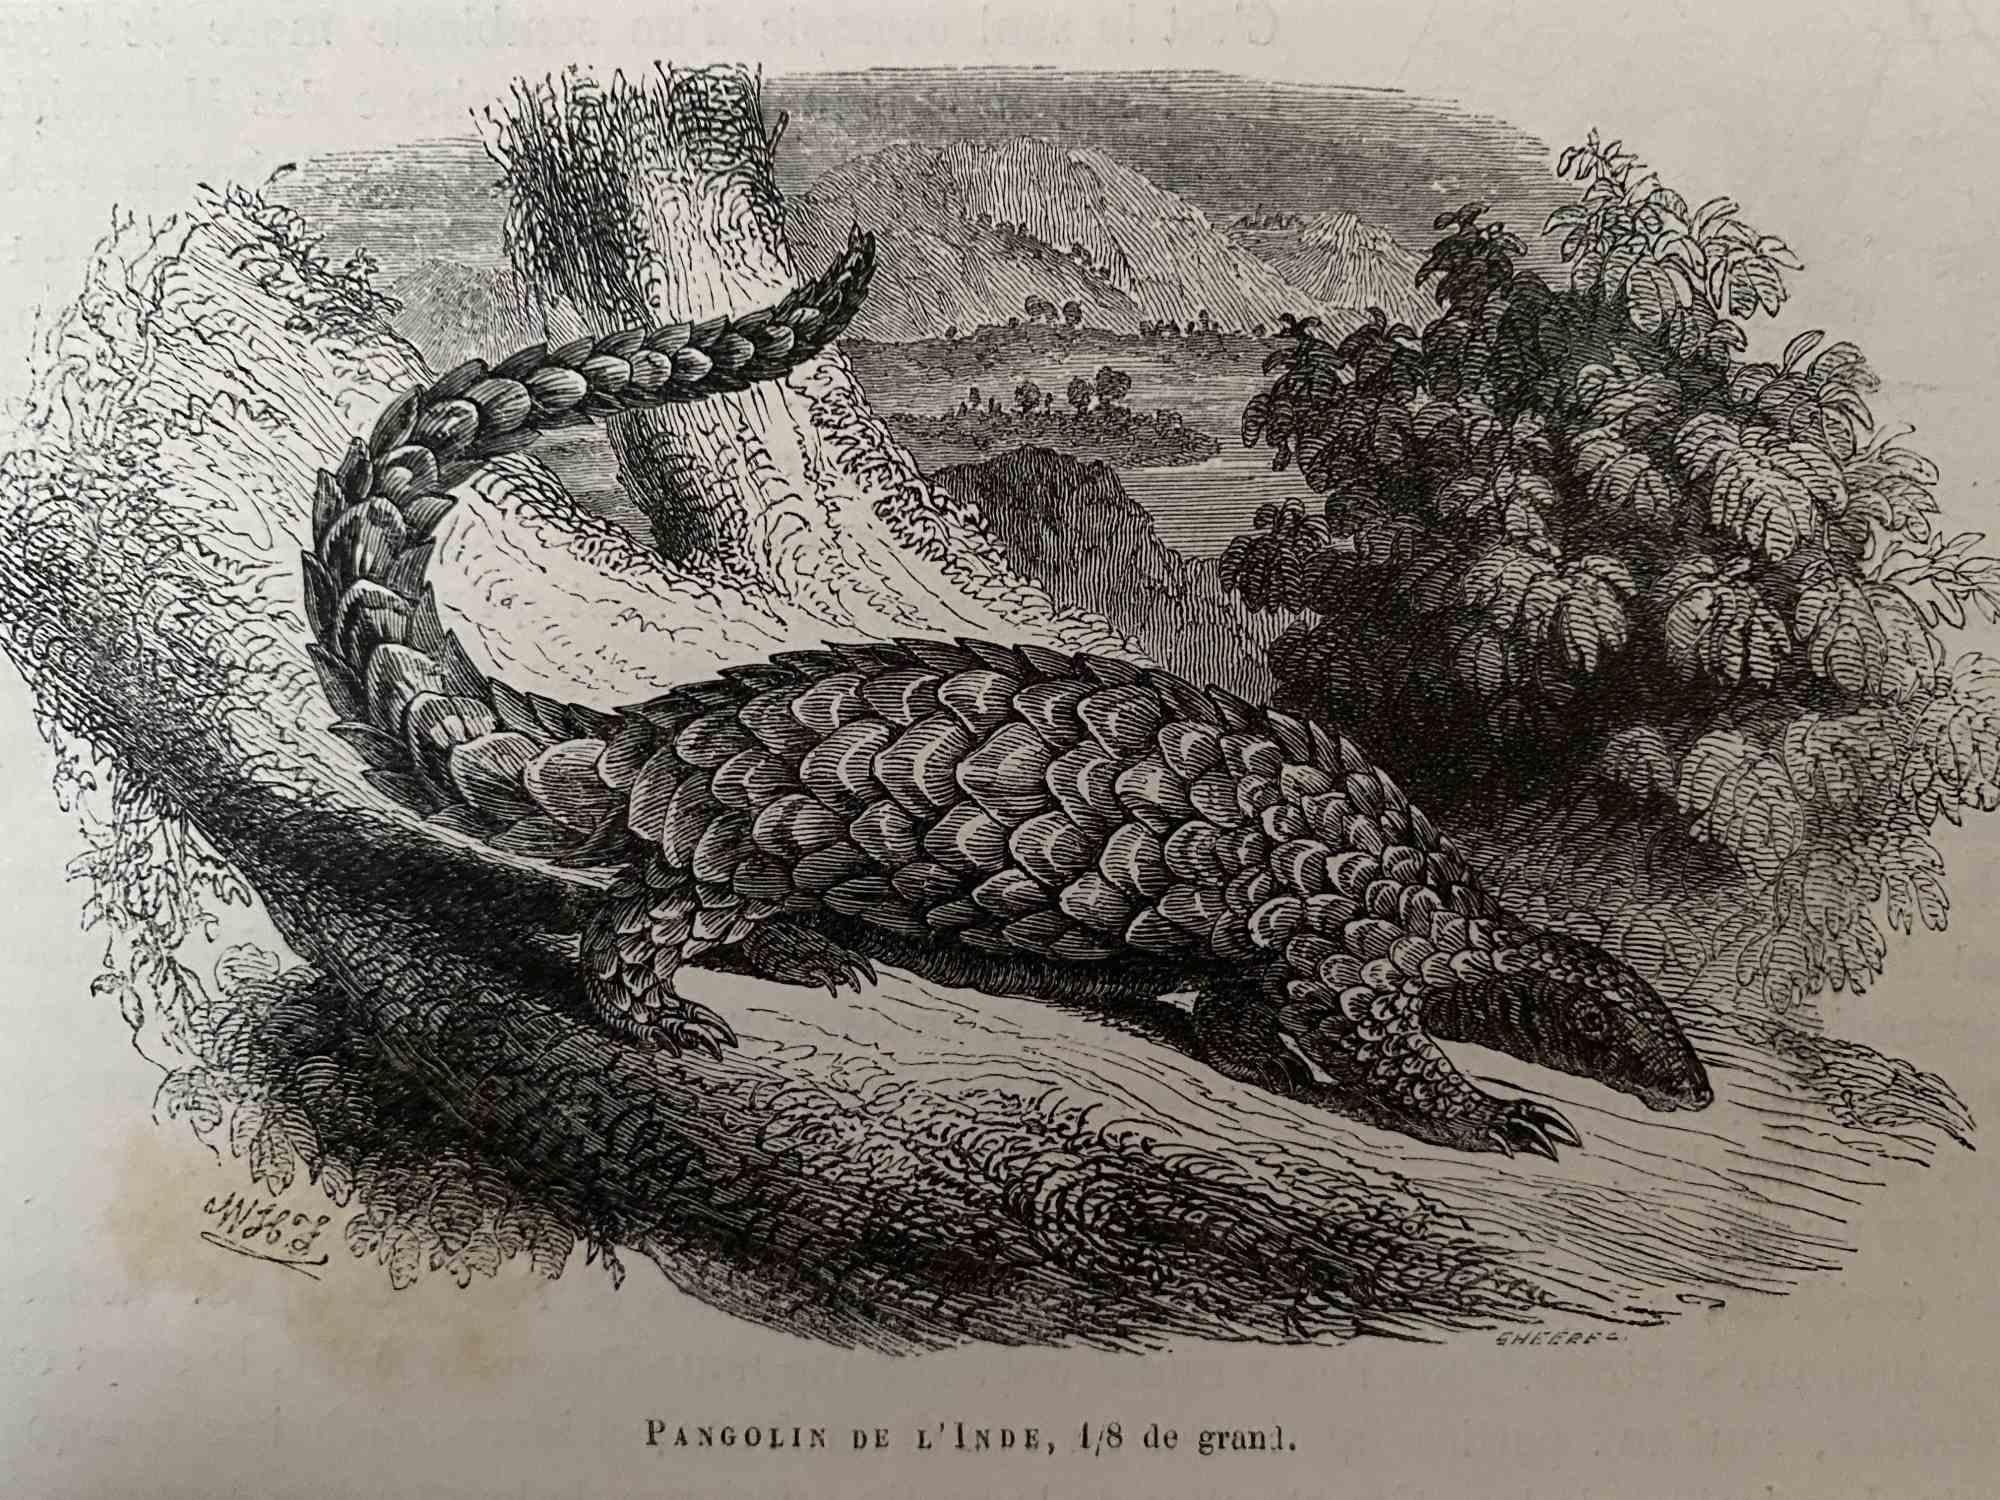 Pangolin De L'Inde - Originallithographie von Paul Gervais - 1854